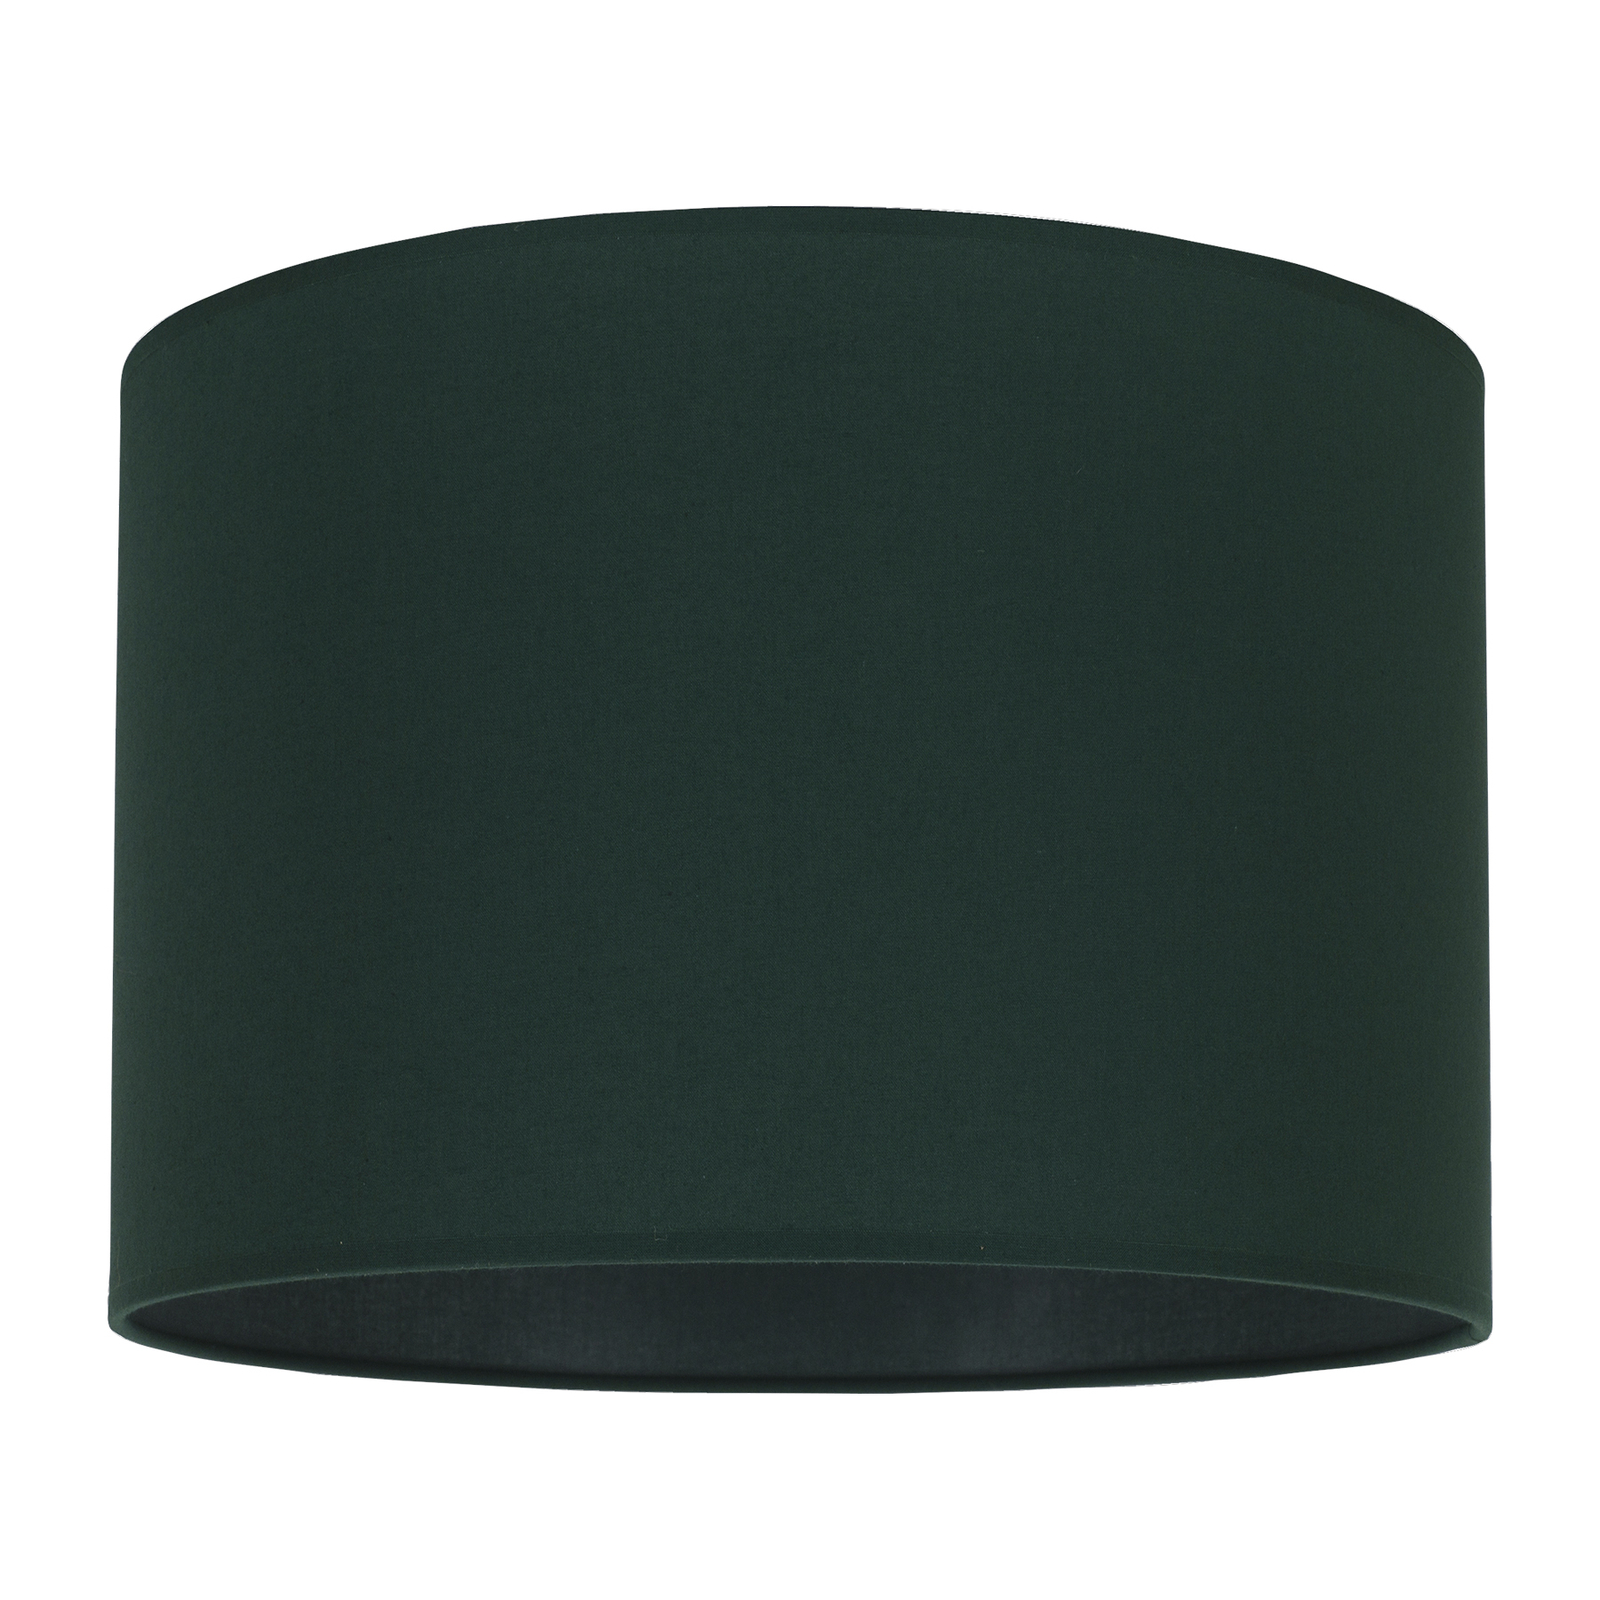 Klosz lampy Roller, zielony Ø 25 cm wysokość 18 cm